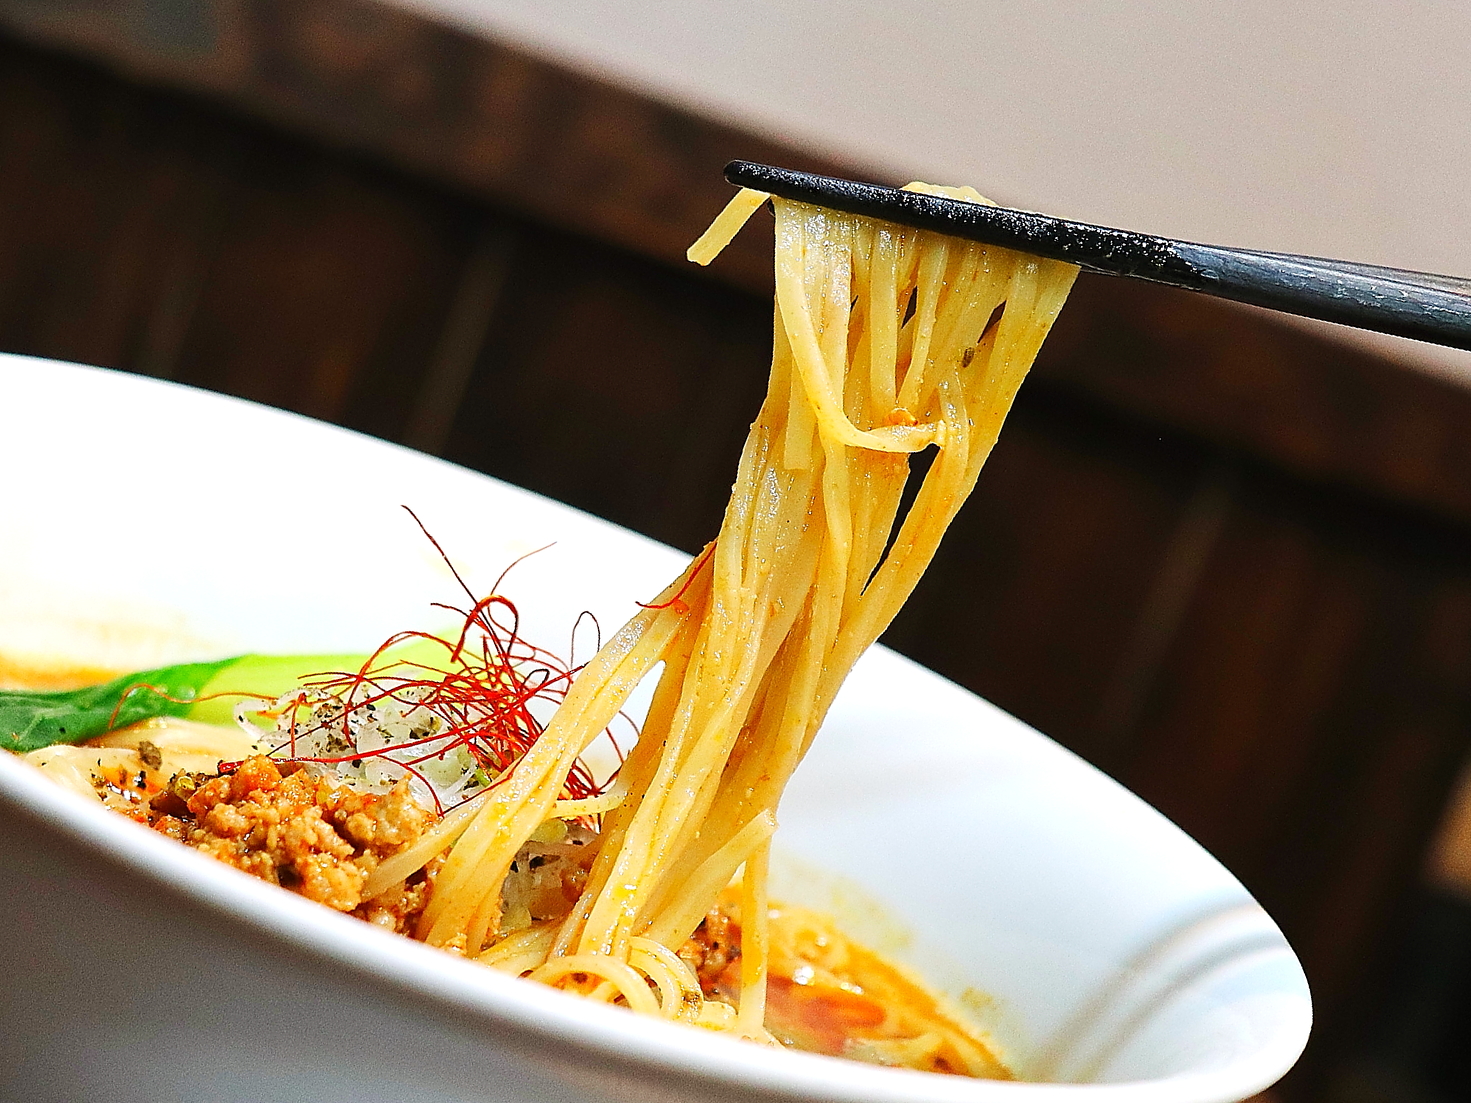 「汁あり担担麺」は整った角が美しい平麺